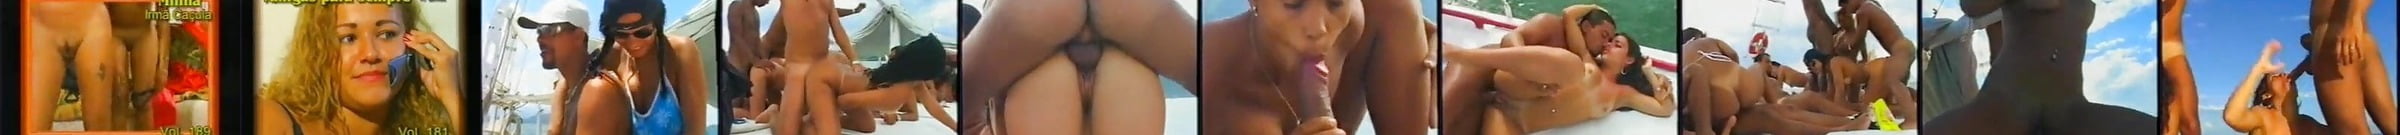 Brazil School Free Brazil Mobile Porn Video 60 Xhamster